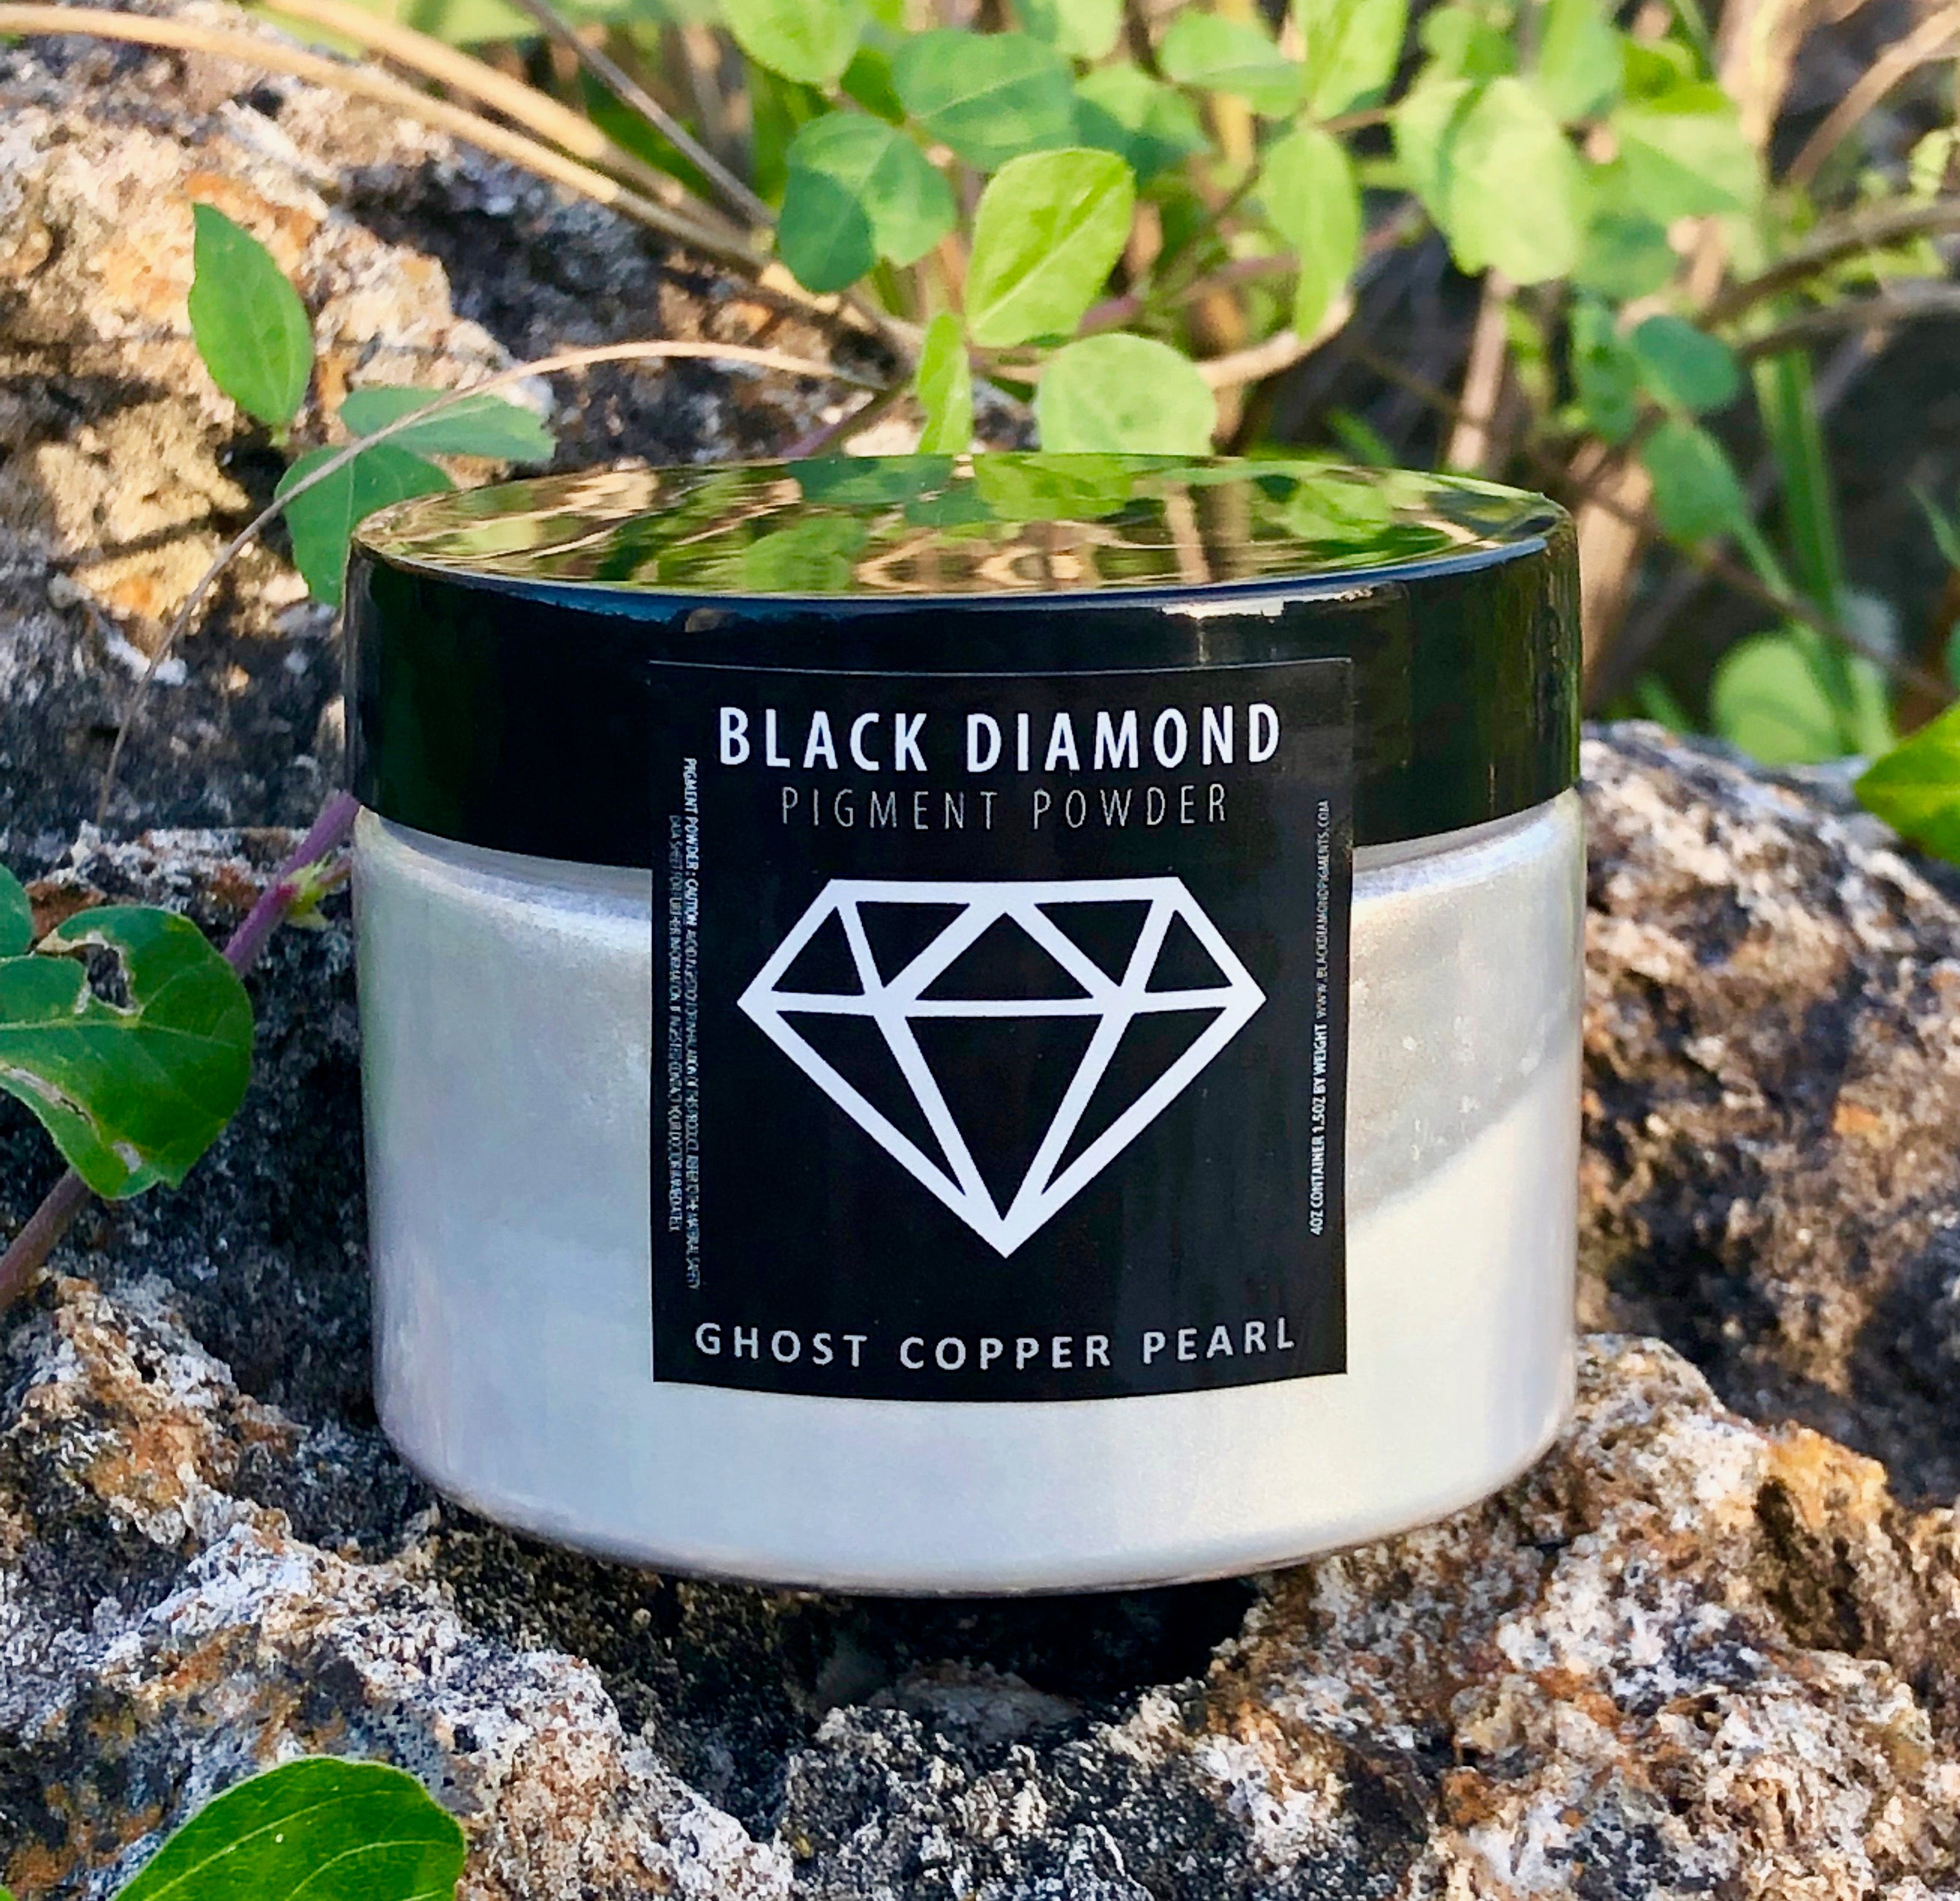 "GHOST COPPER PEARL" Black Diamond Pigments